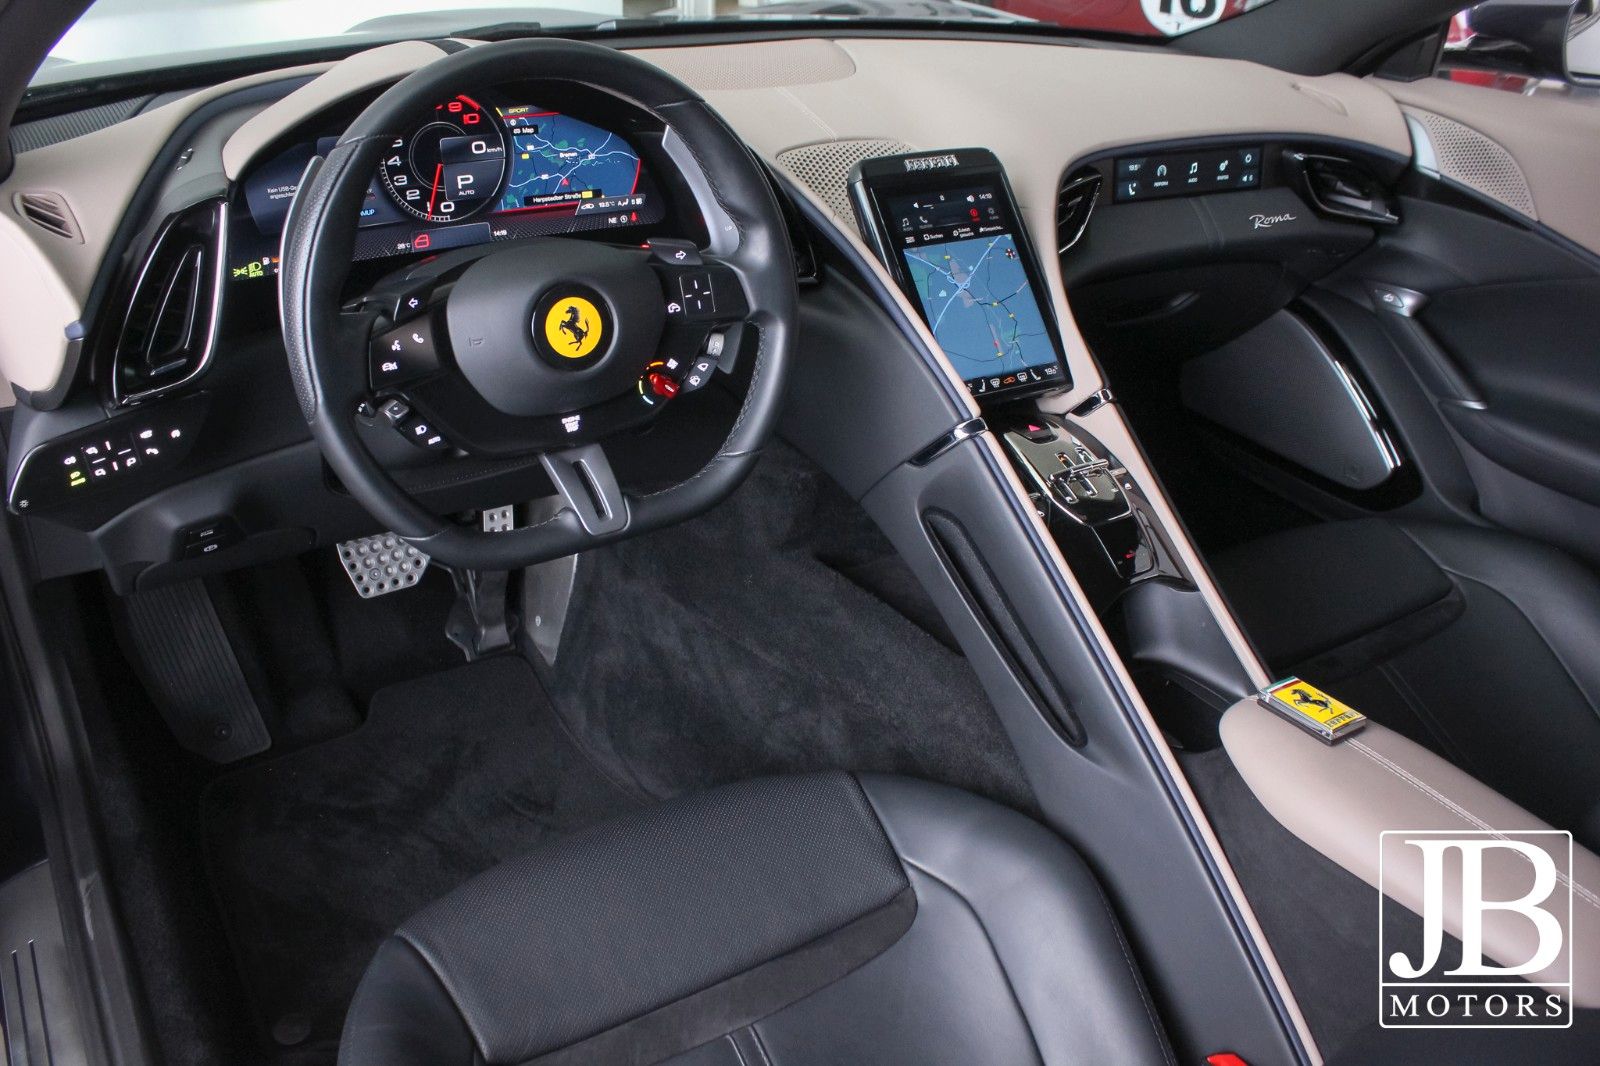 Fahrzeugabbildung Ferrari Roma Beifahrer Display Surround View Kamera JBL